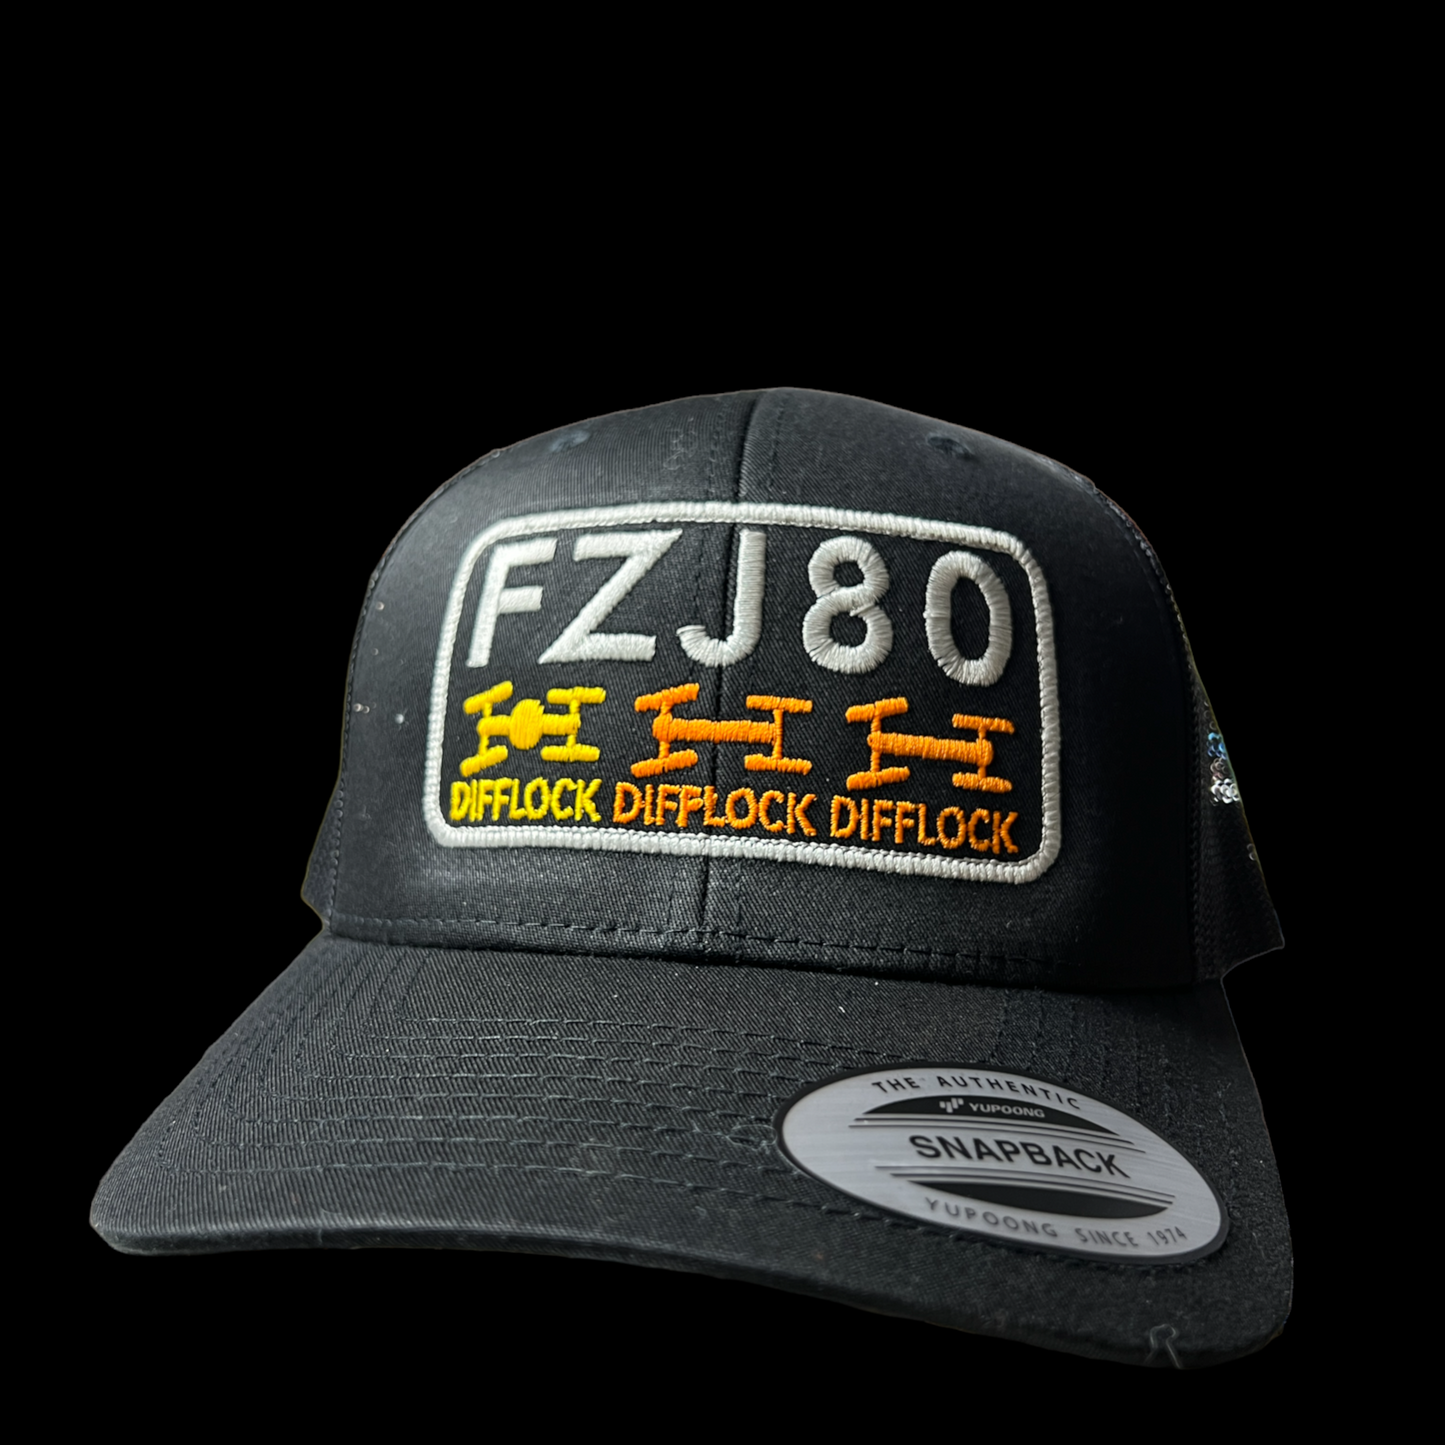 FZJ80 Triplelock Trucker Cap